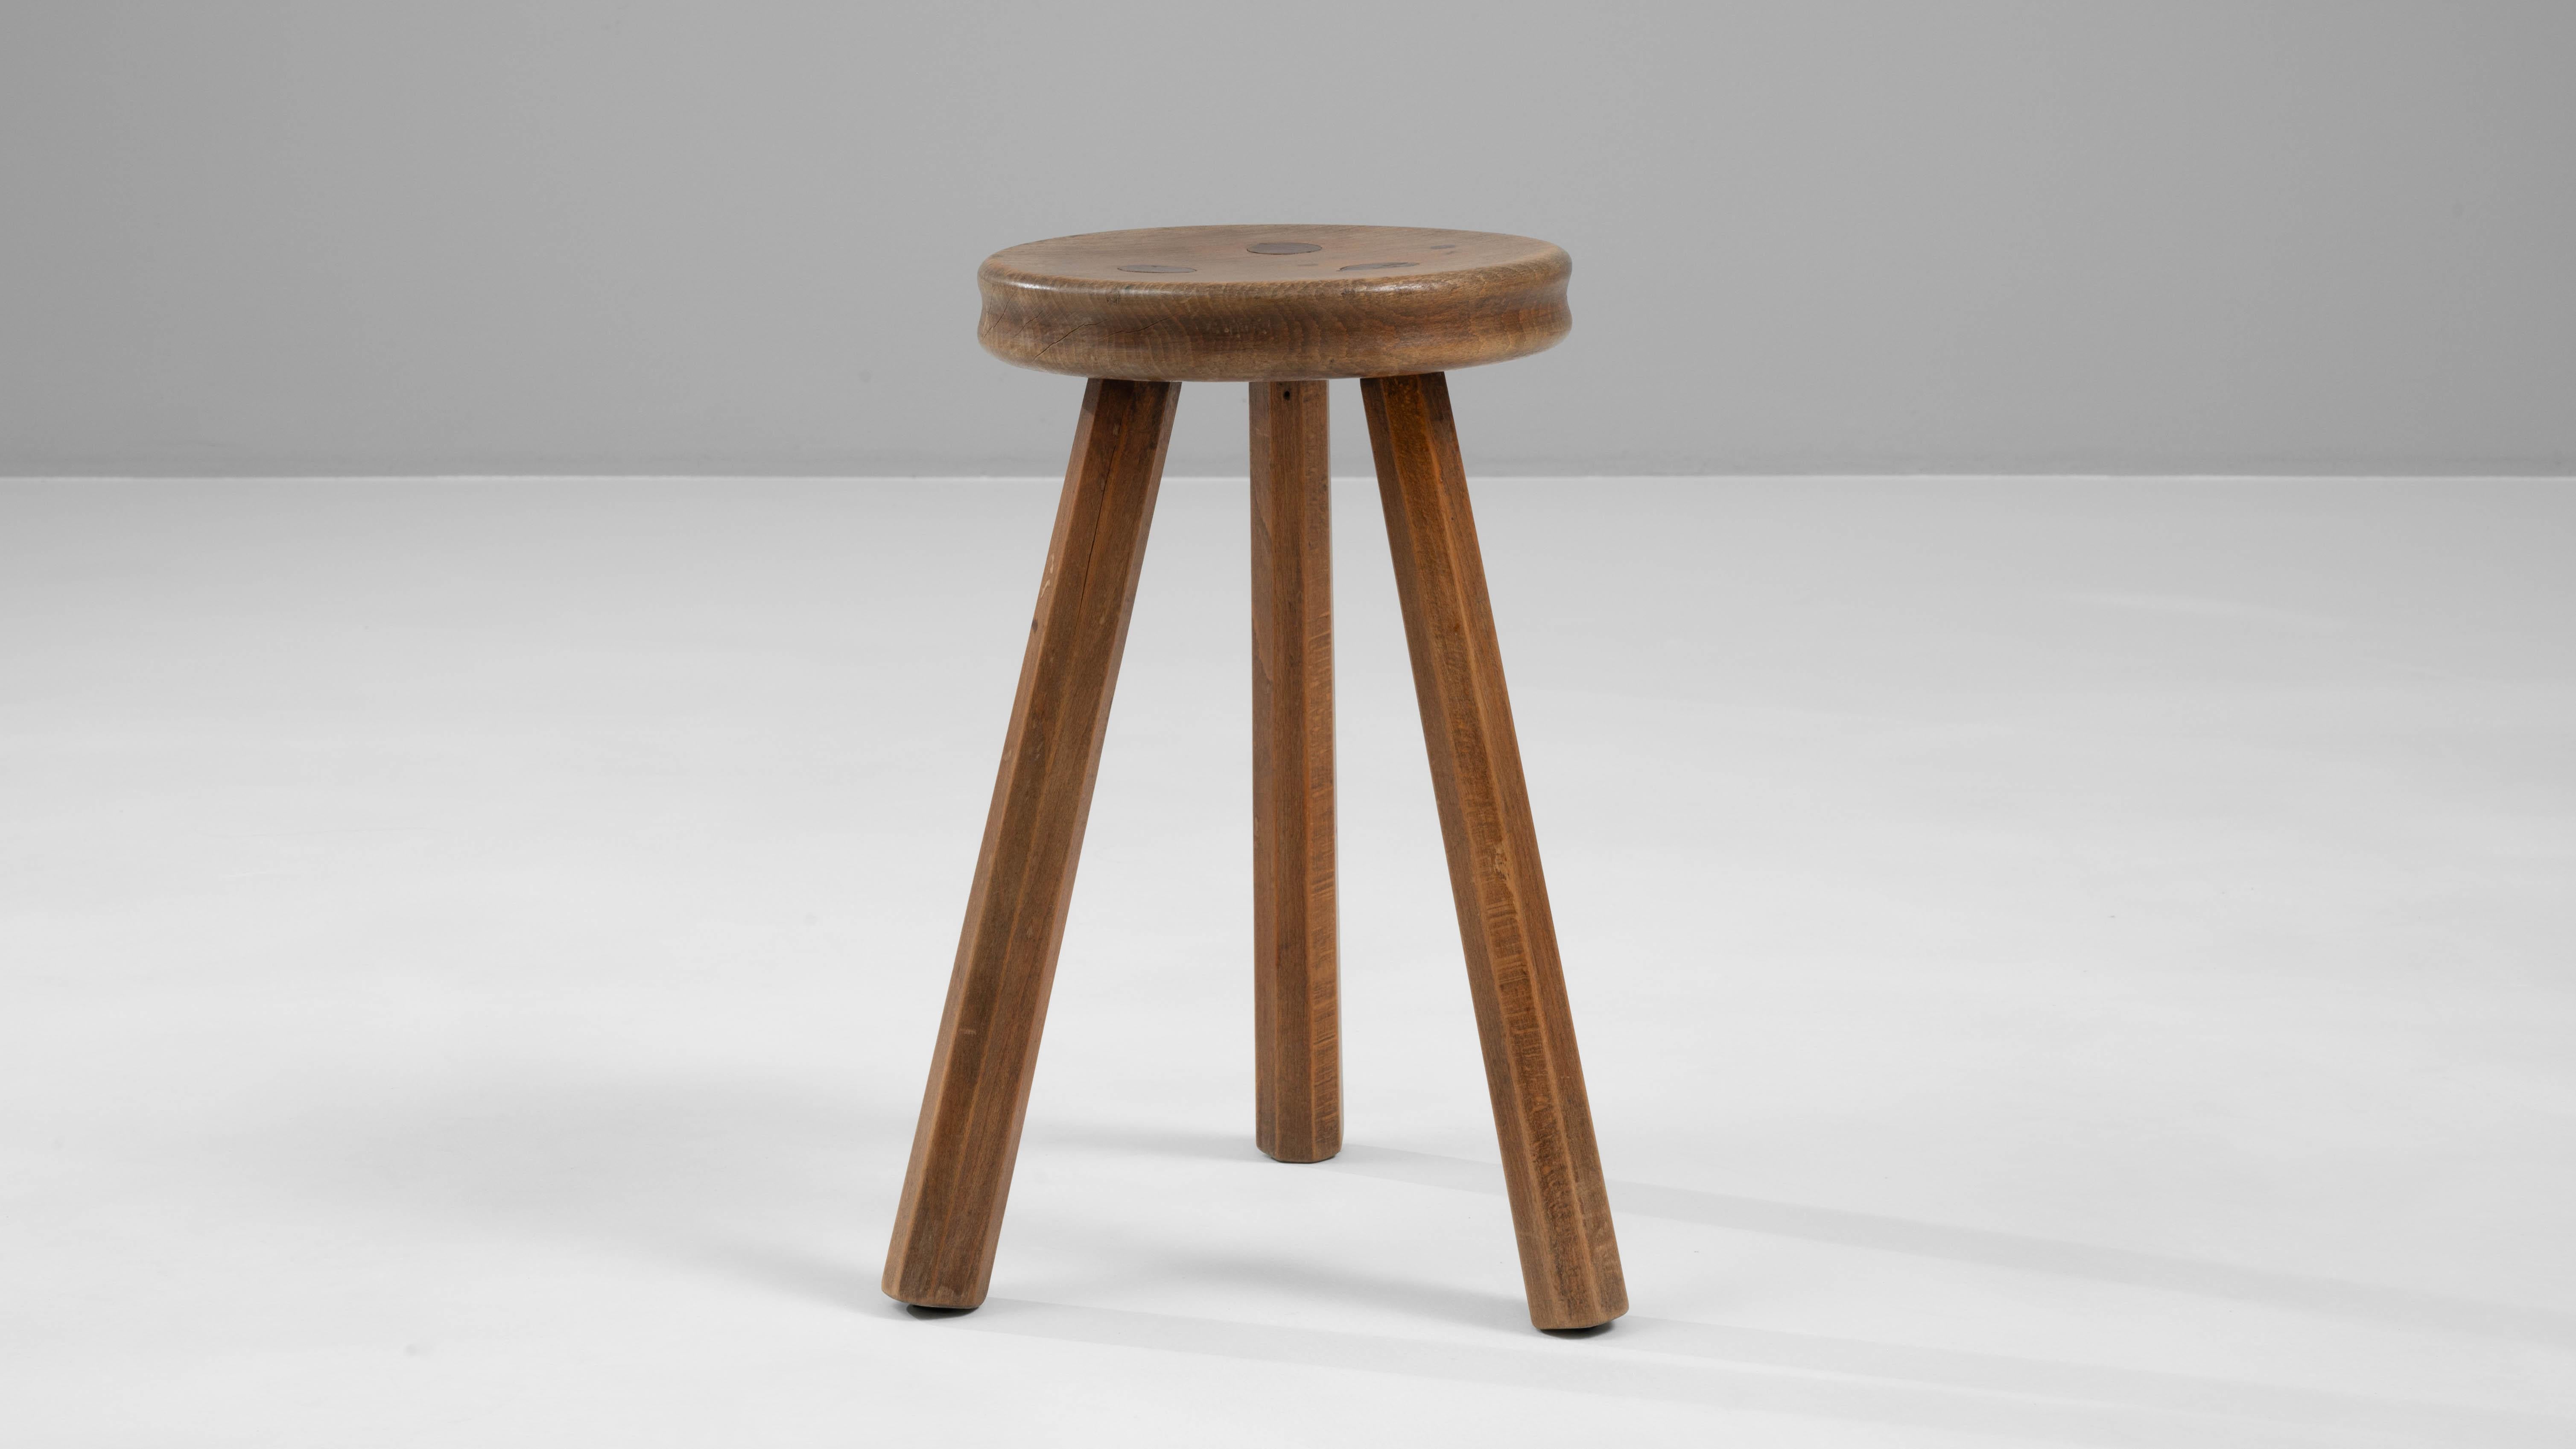 Apportez une simplicité classique et un style durable à votre intérieur avec ce tabouret en bois belge du 20e siècle. Fabriqué de manière experte à partir de bois de haute qualité, ce tabouret met en valeur les magnifiques tons riches de son